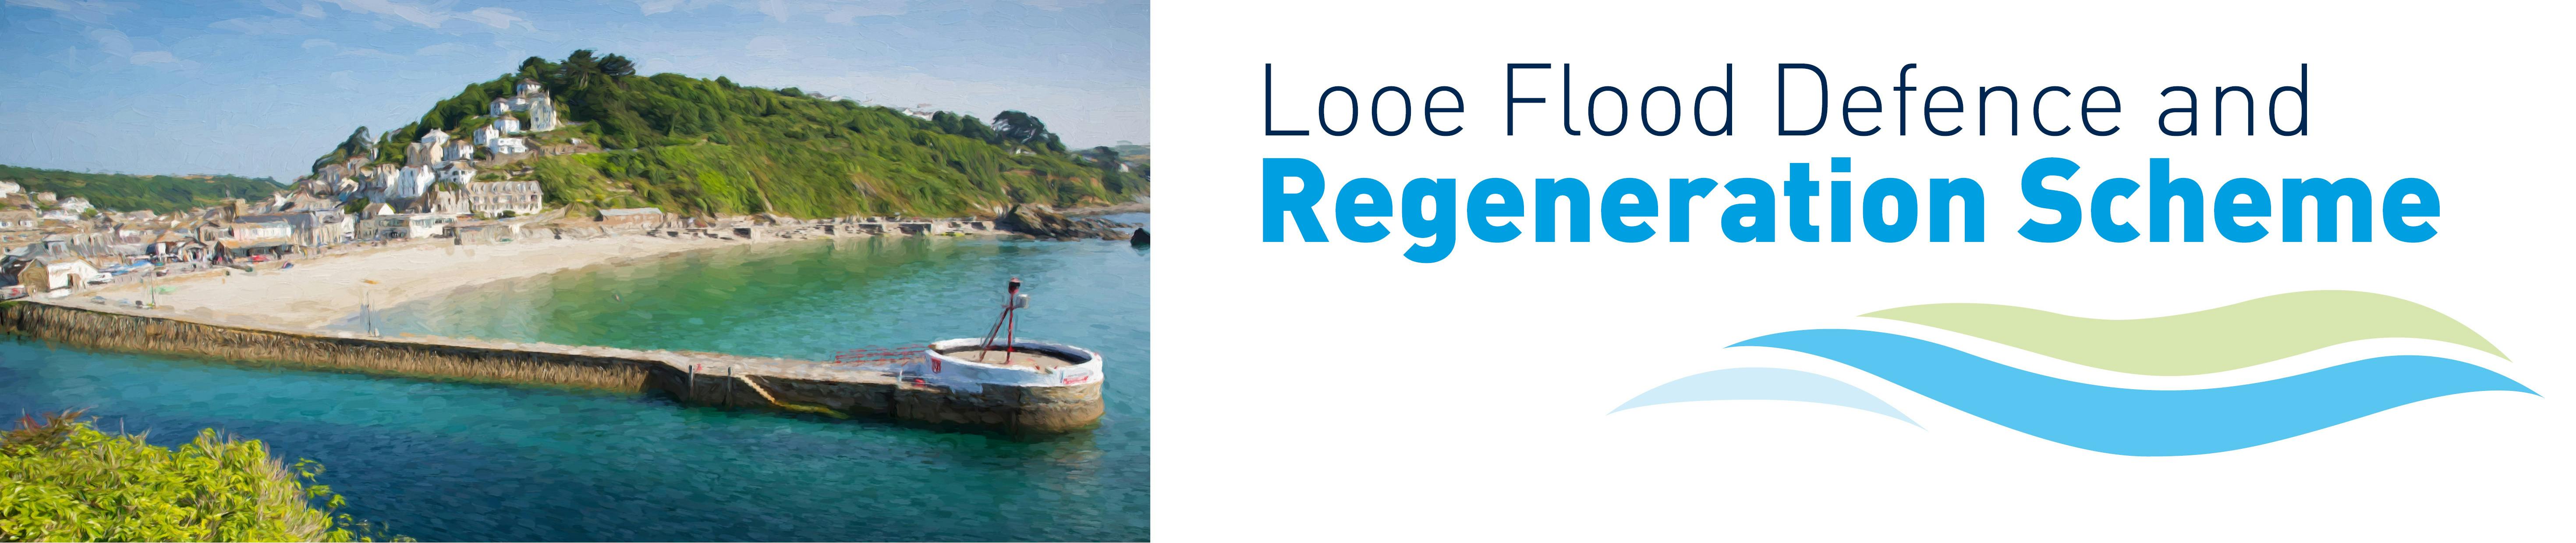 Looe Flood Defence and Regeneration scheme - banner image